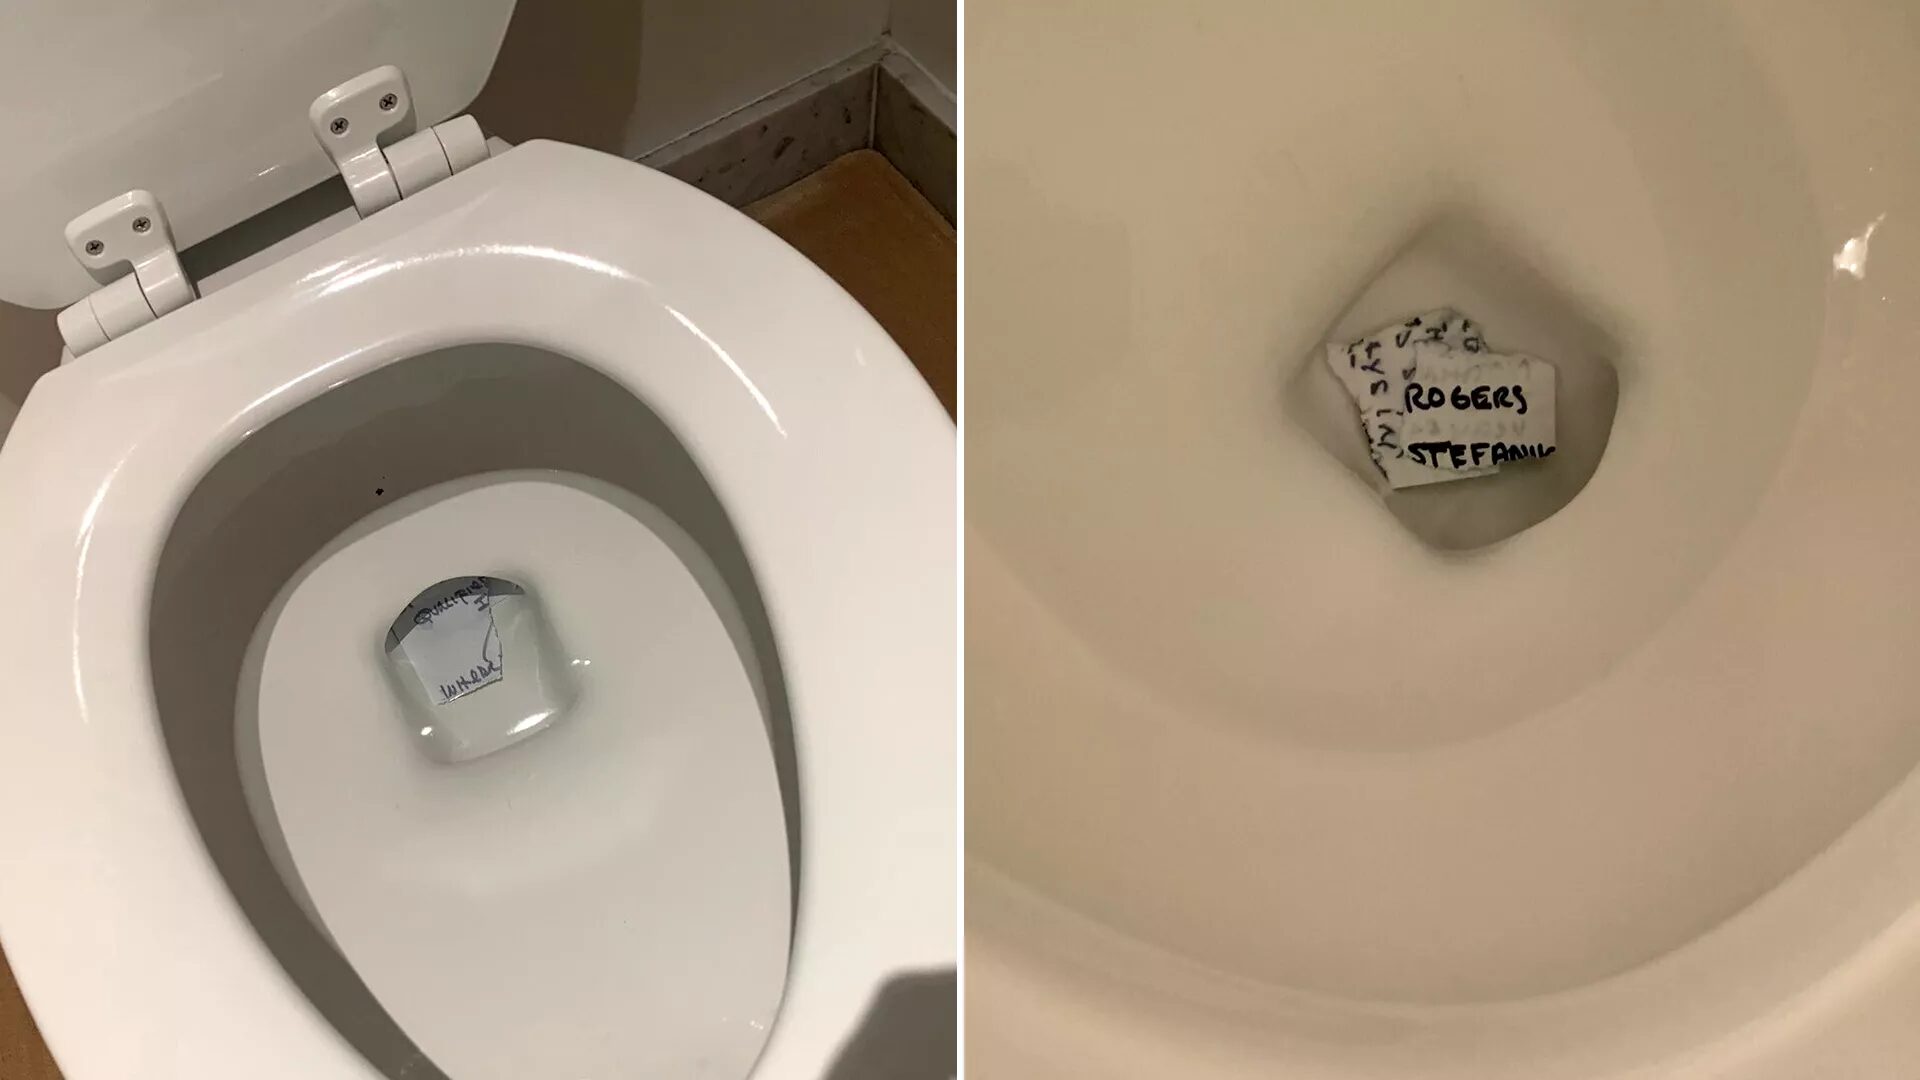 trump's toilet